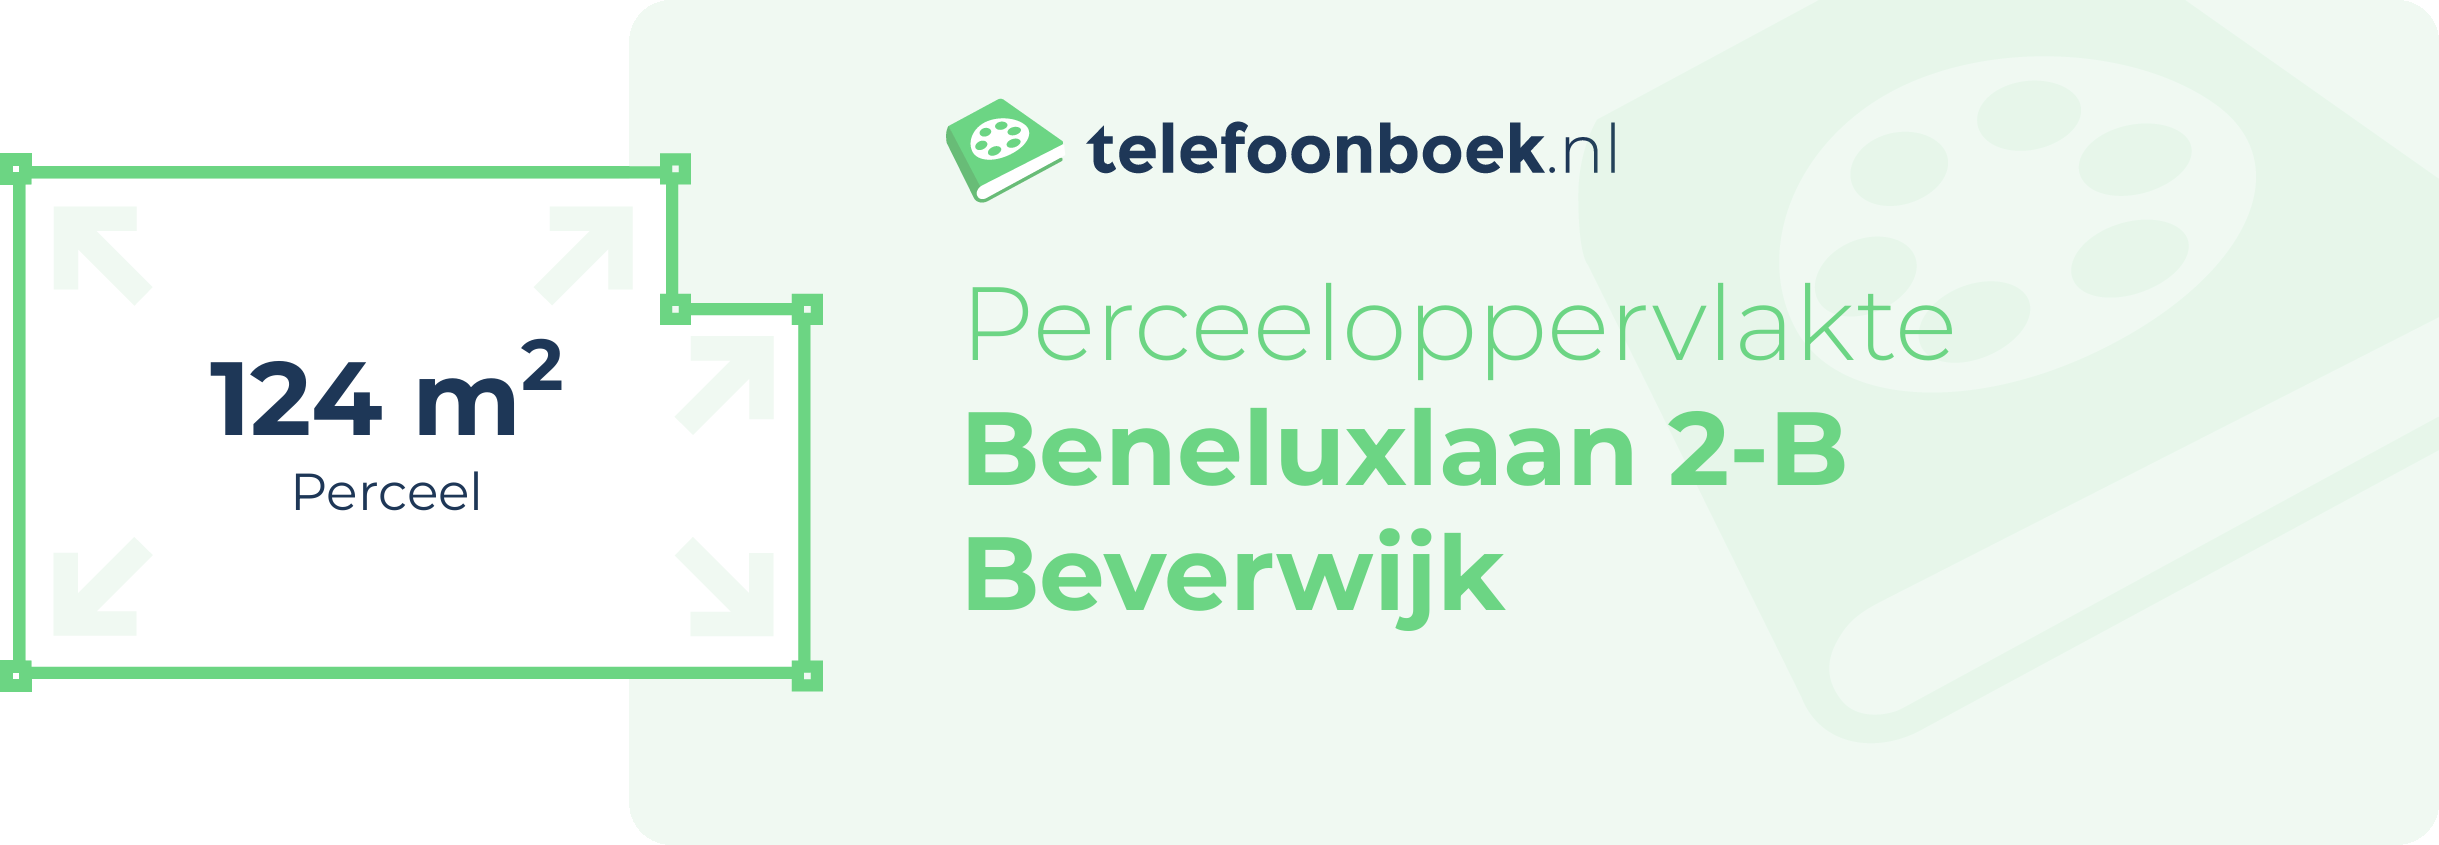 Perceeloppervlakte Beneluxlaan 2-B Beverwijk